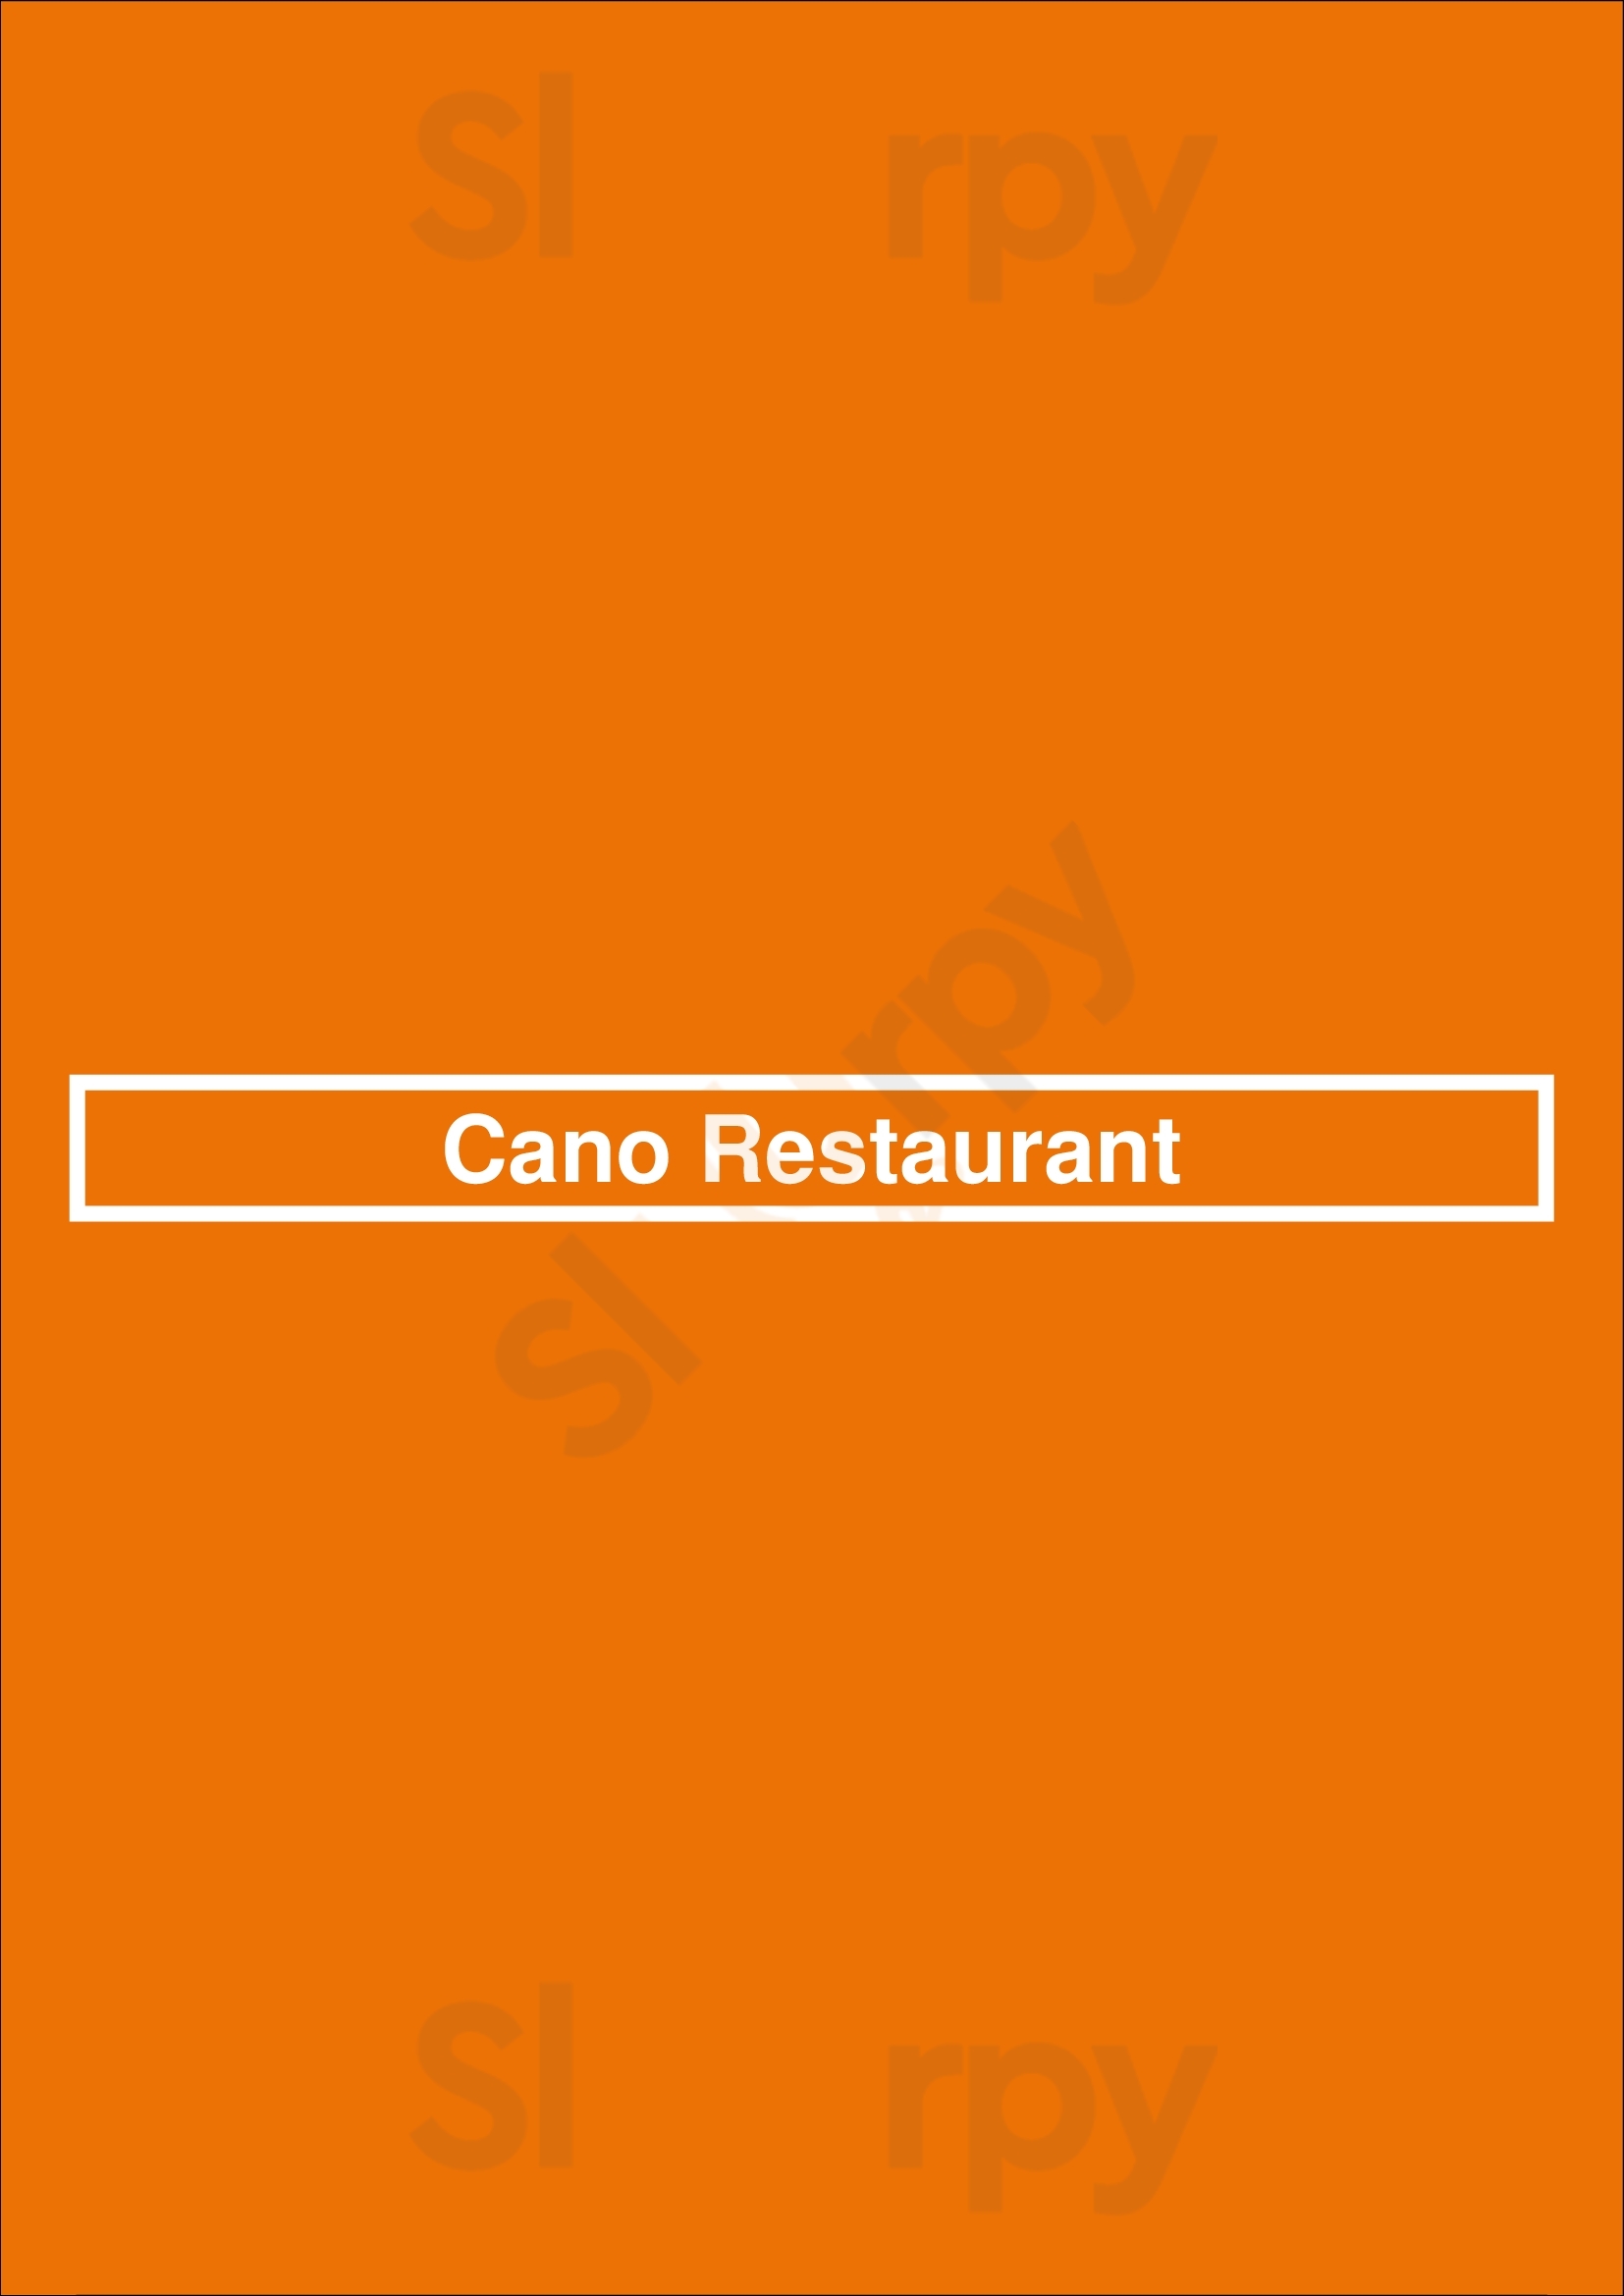 Cano Restaurant Toronto Menu - 1